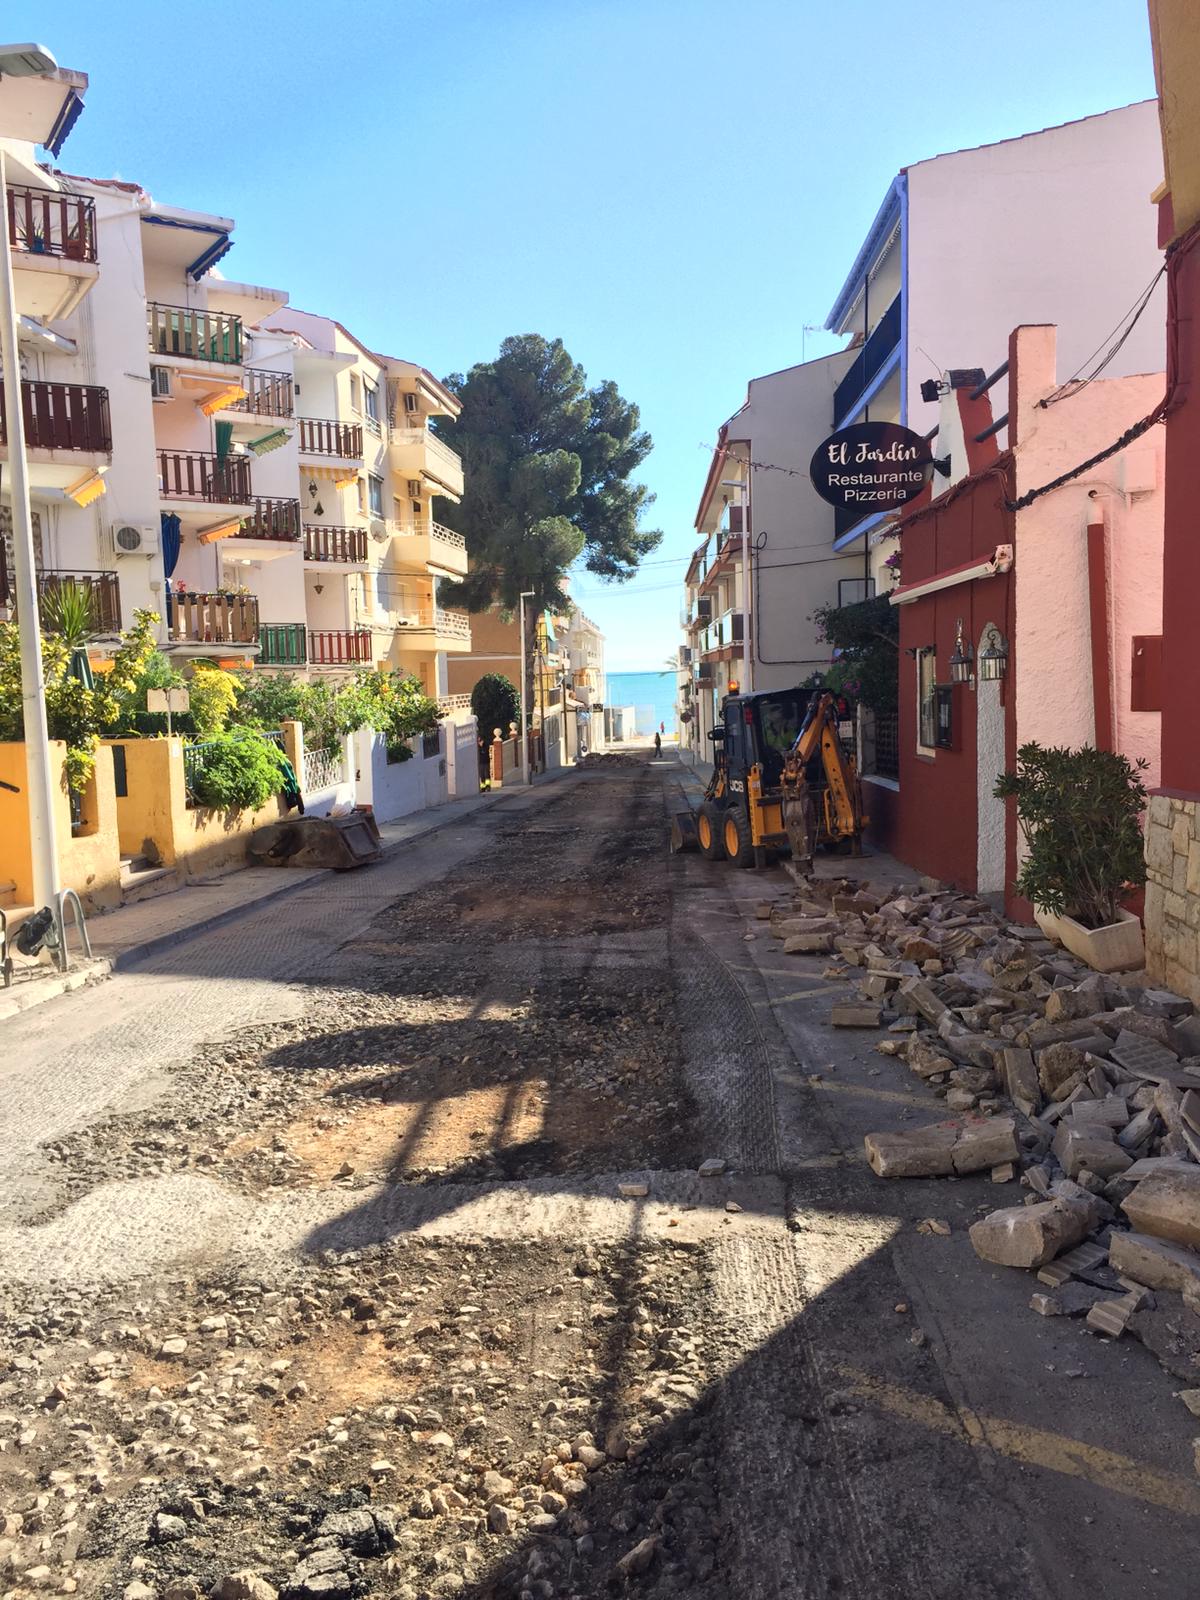 Alcalà, comencen les feines per a pavimentar amb terra ceràmic el carrer Santa Llúcia d'Alcossebre